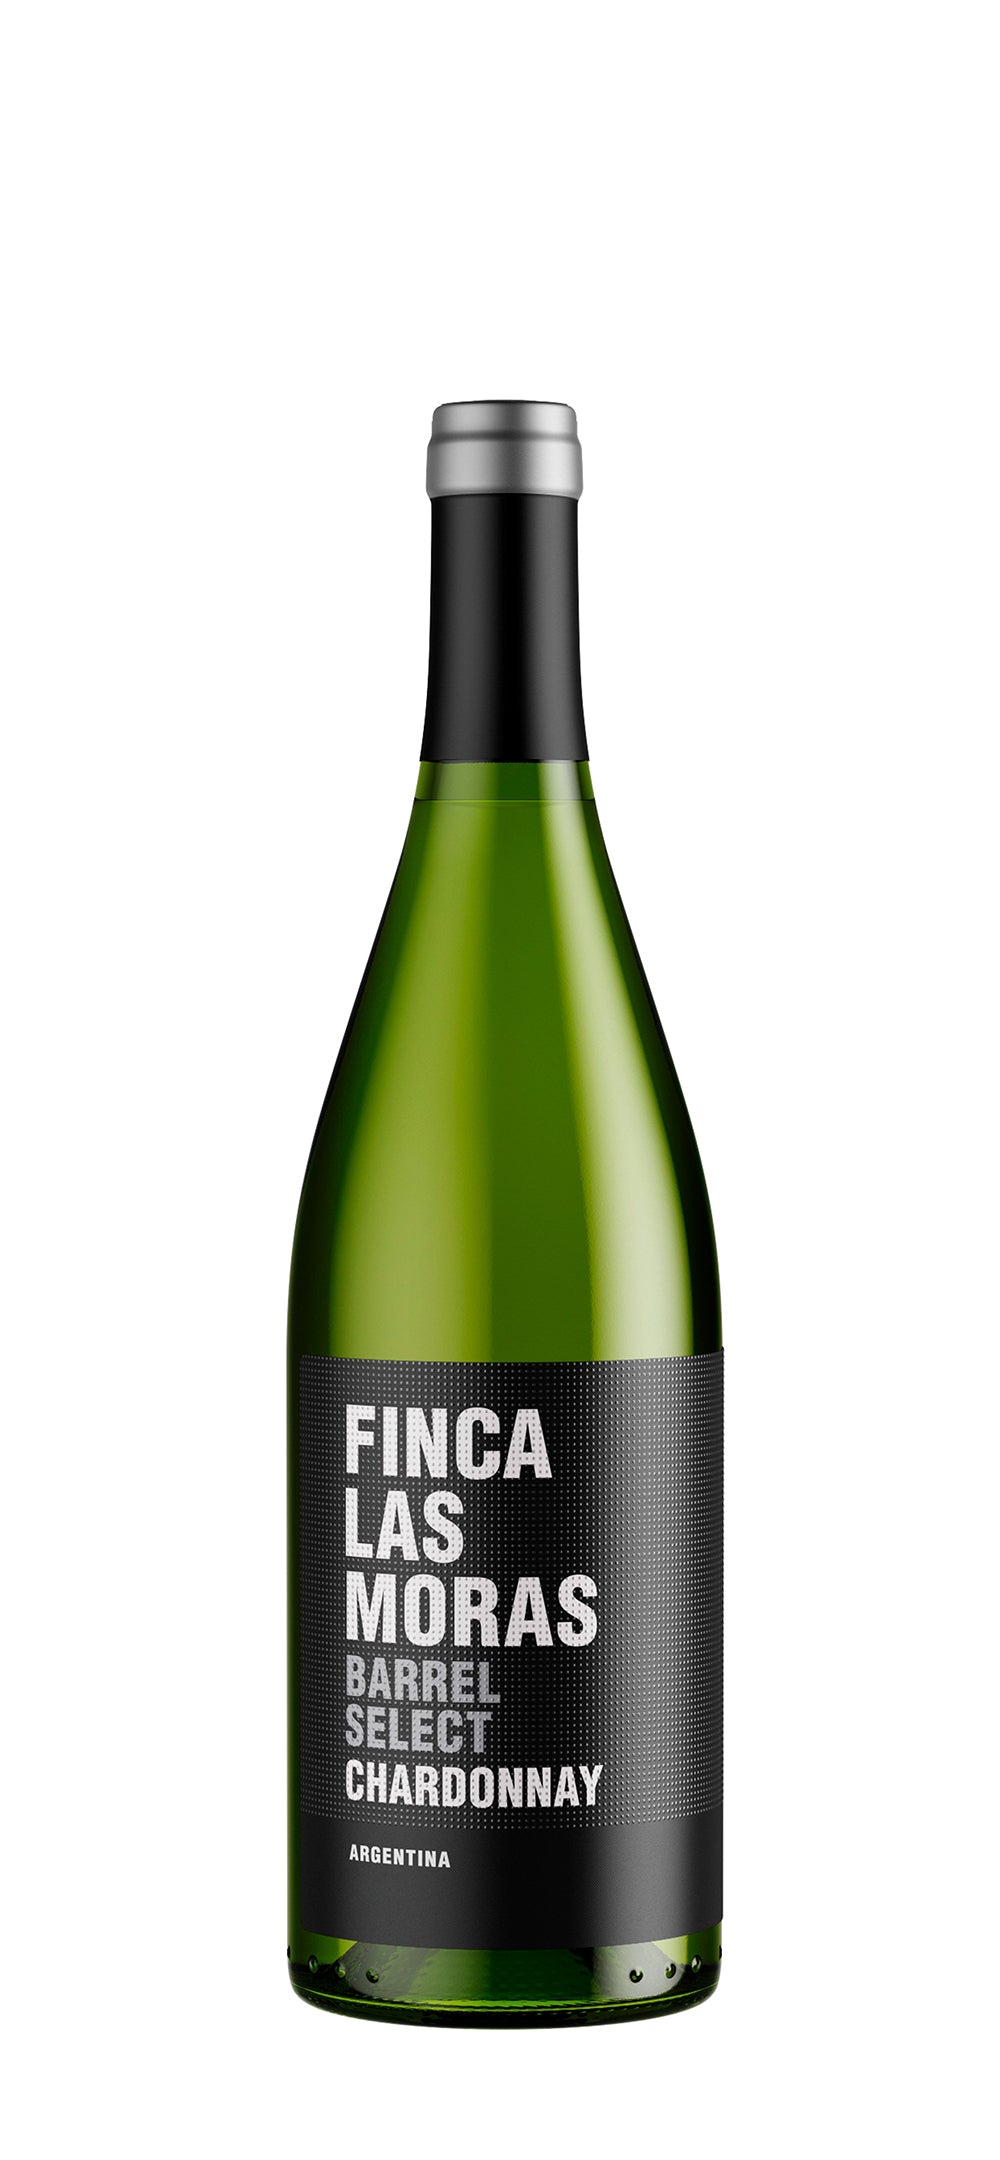 FINCA LAS MORAS Barrel Select Chardonnay 2018